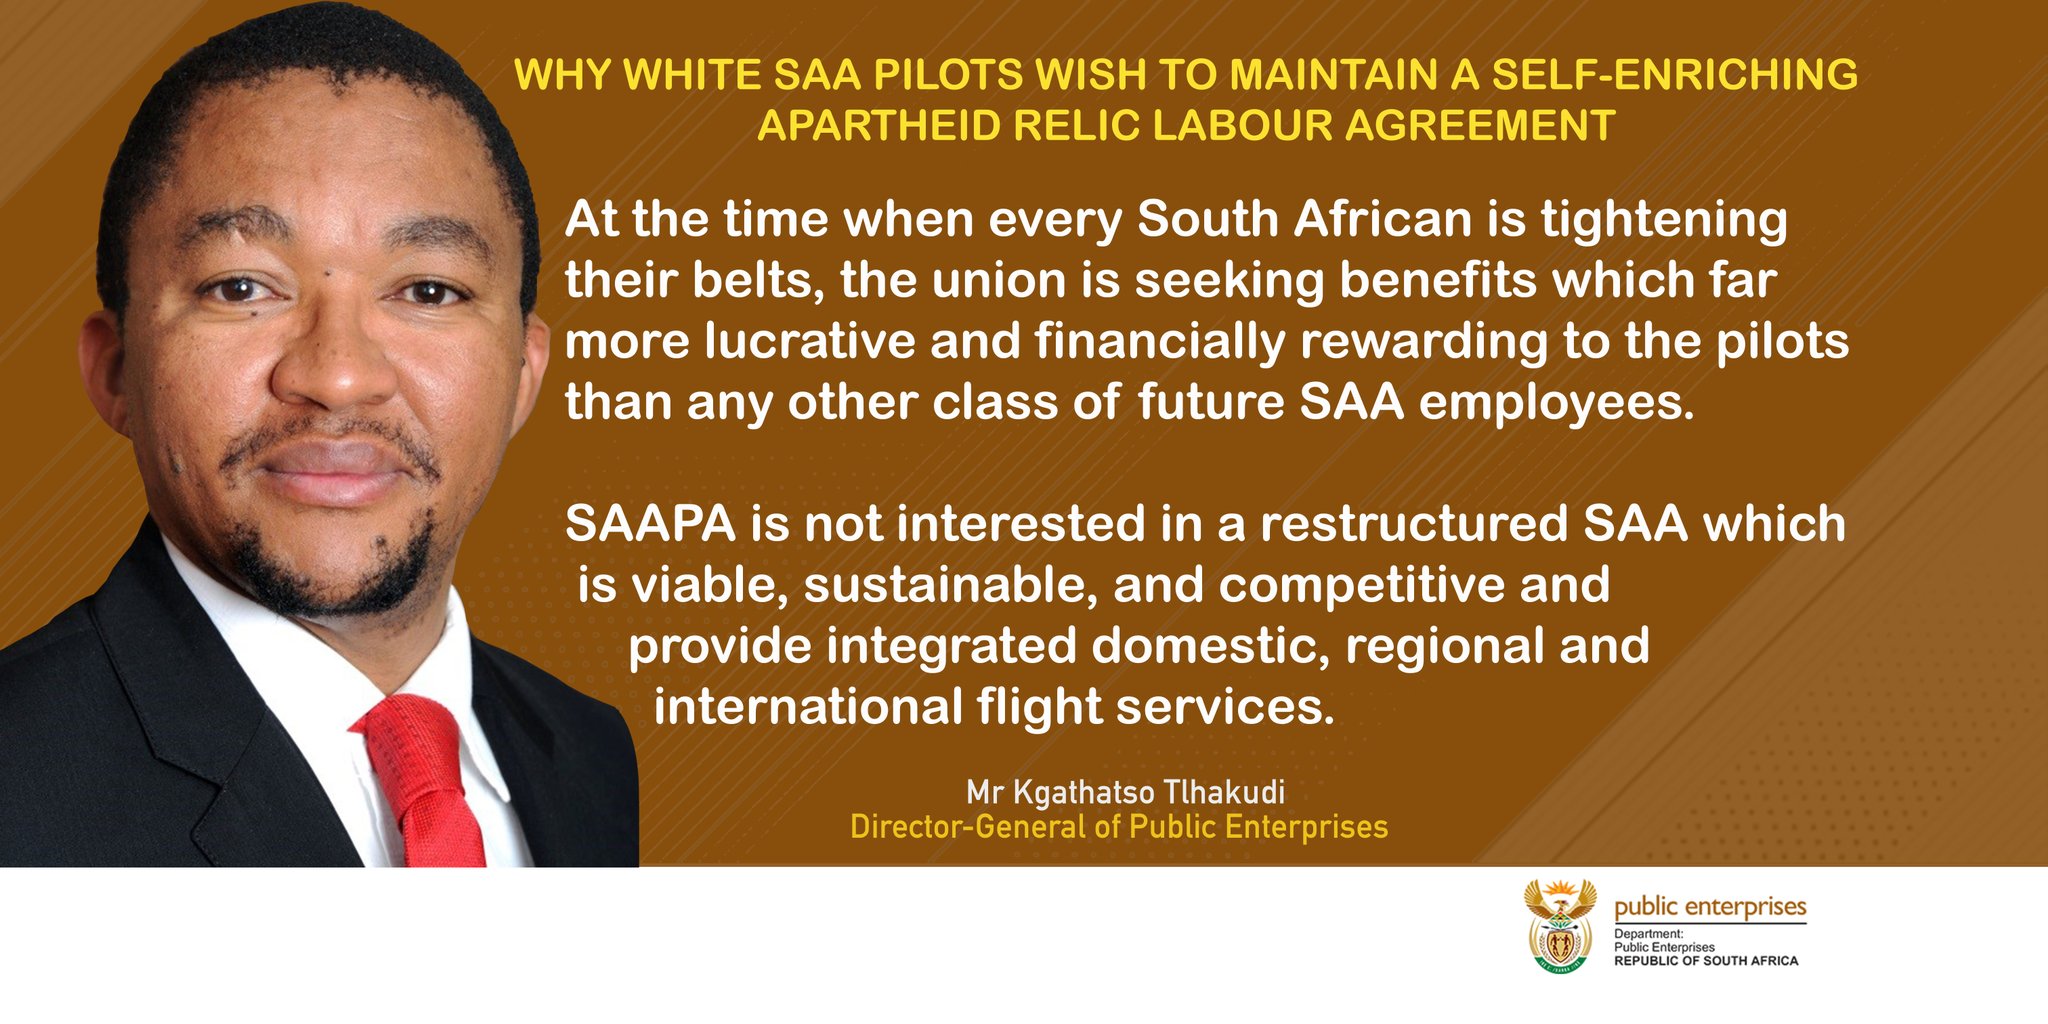 White SAA pilots tweet by Dept of Enterprises